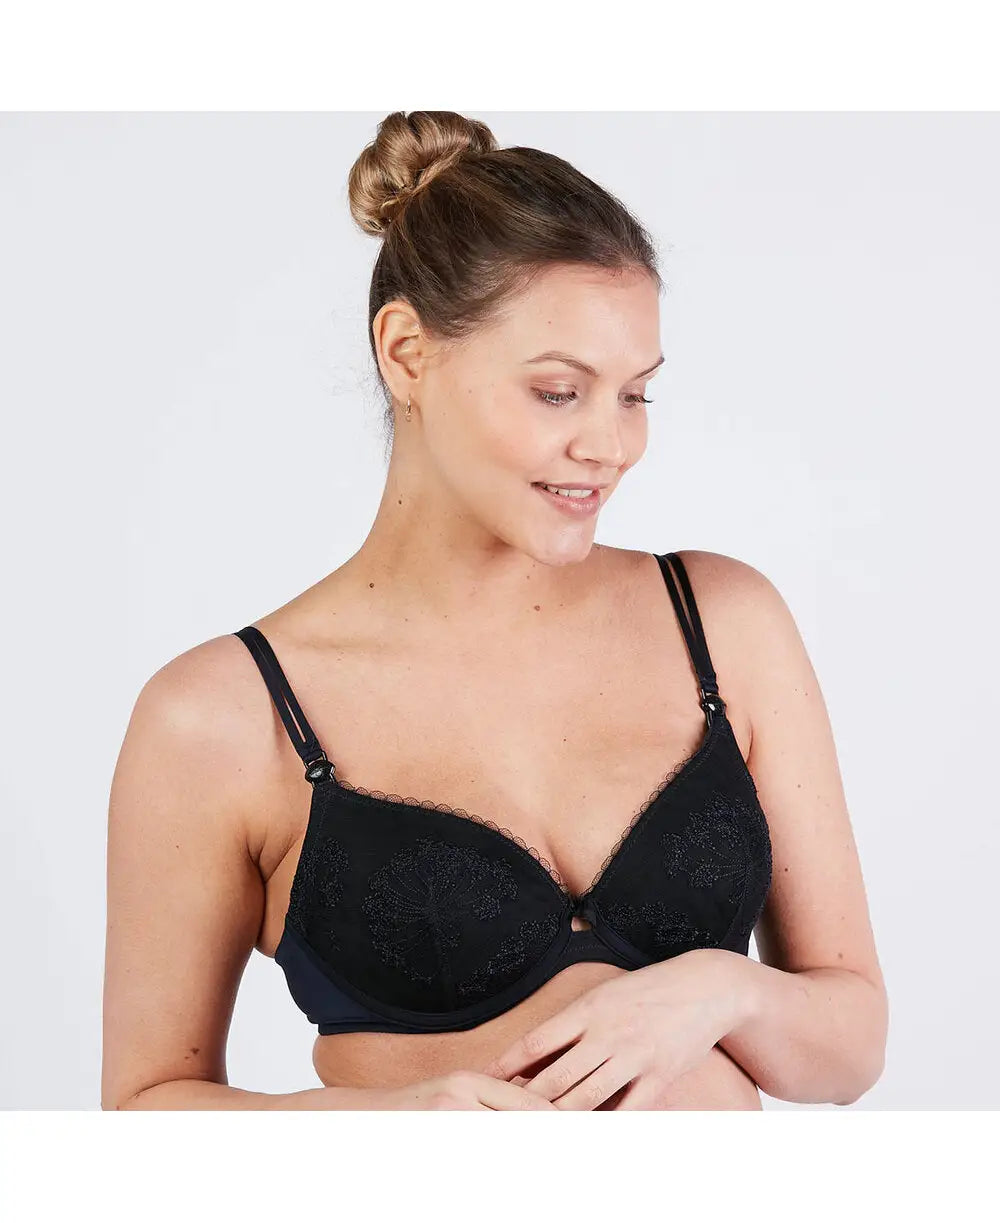 Lace push-up bra